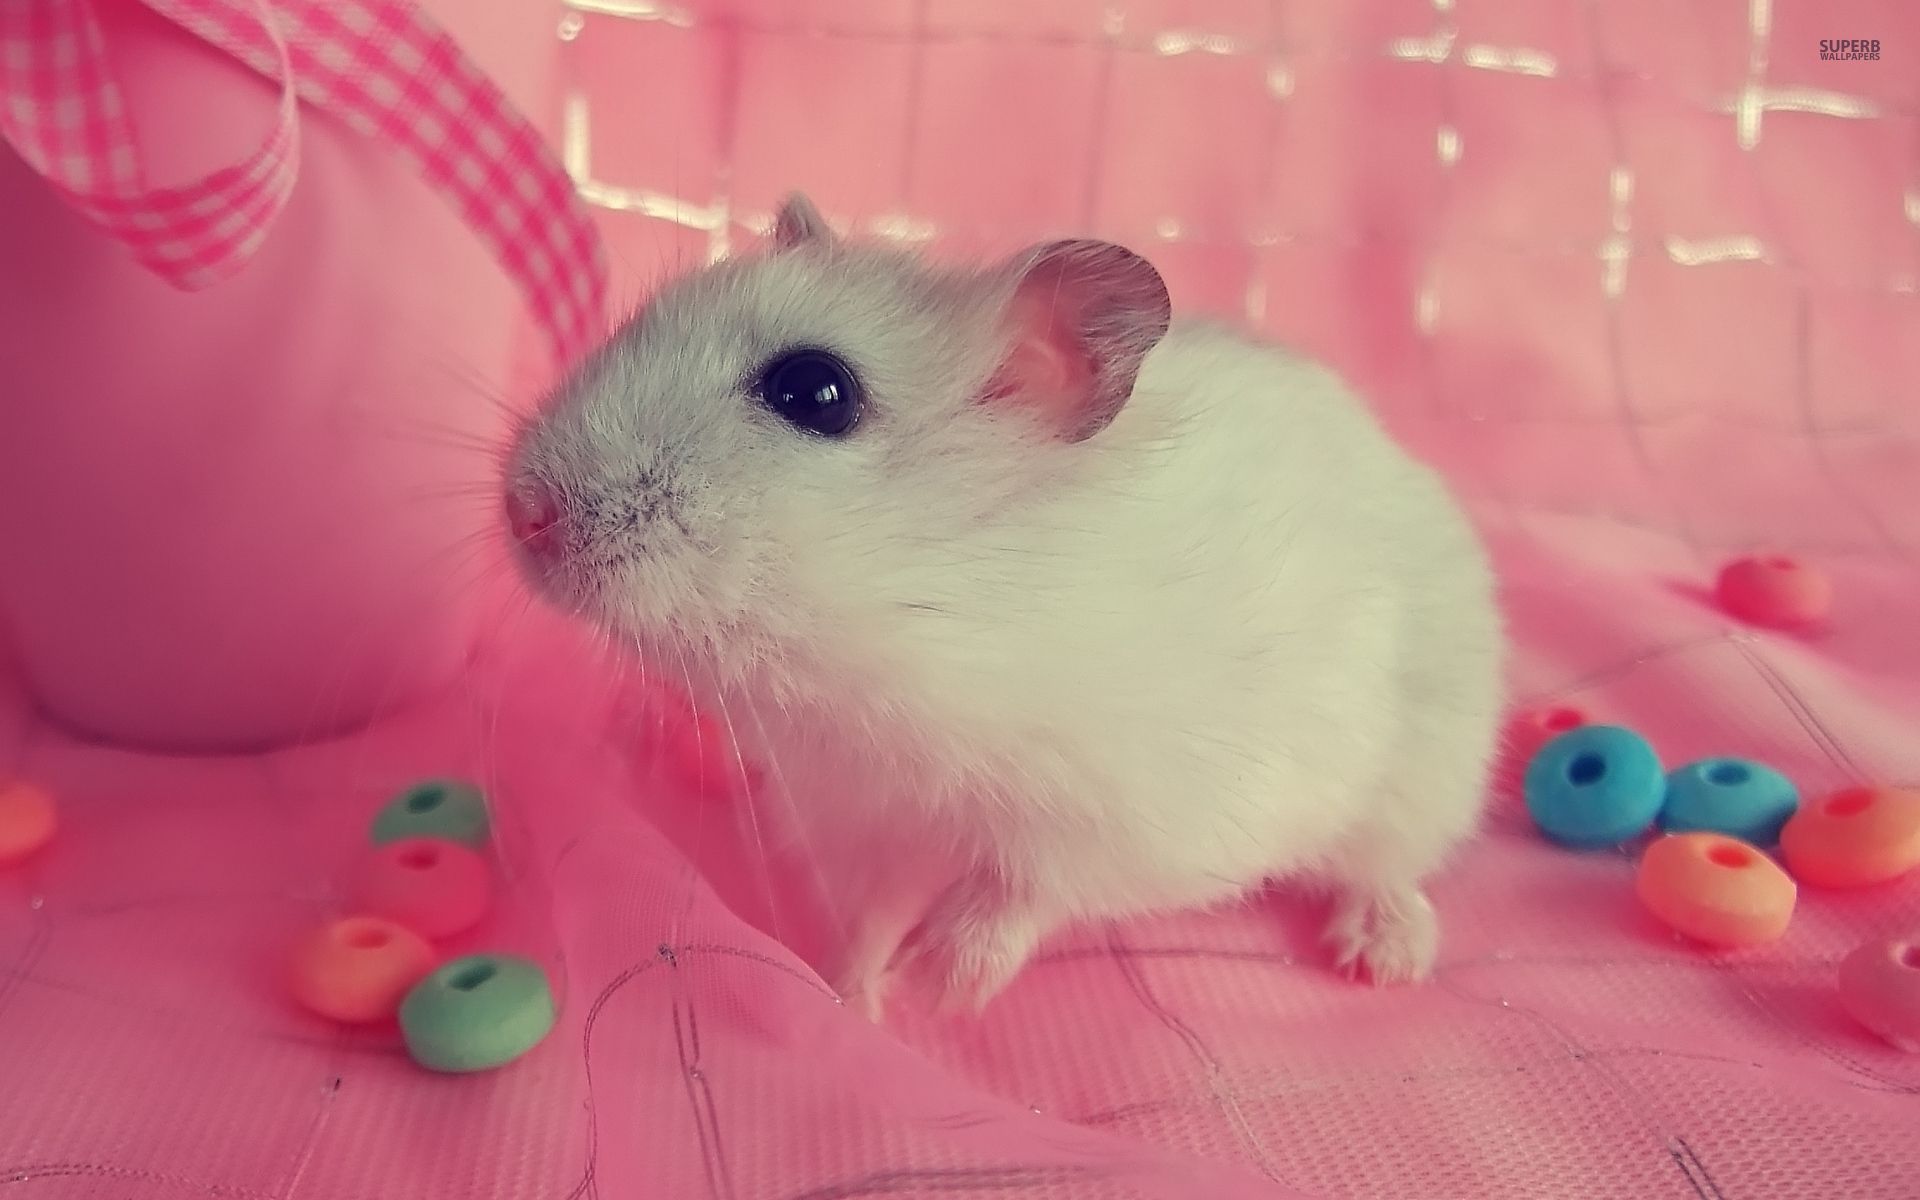 Cute hamster wallpaper - Animal wallpapers